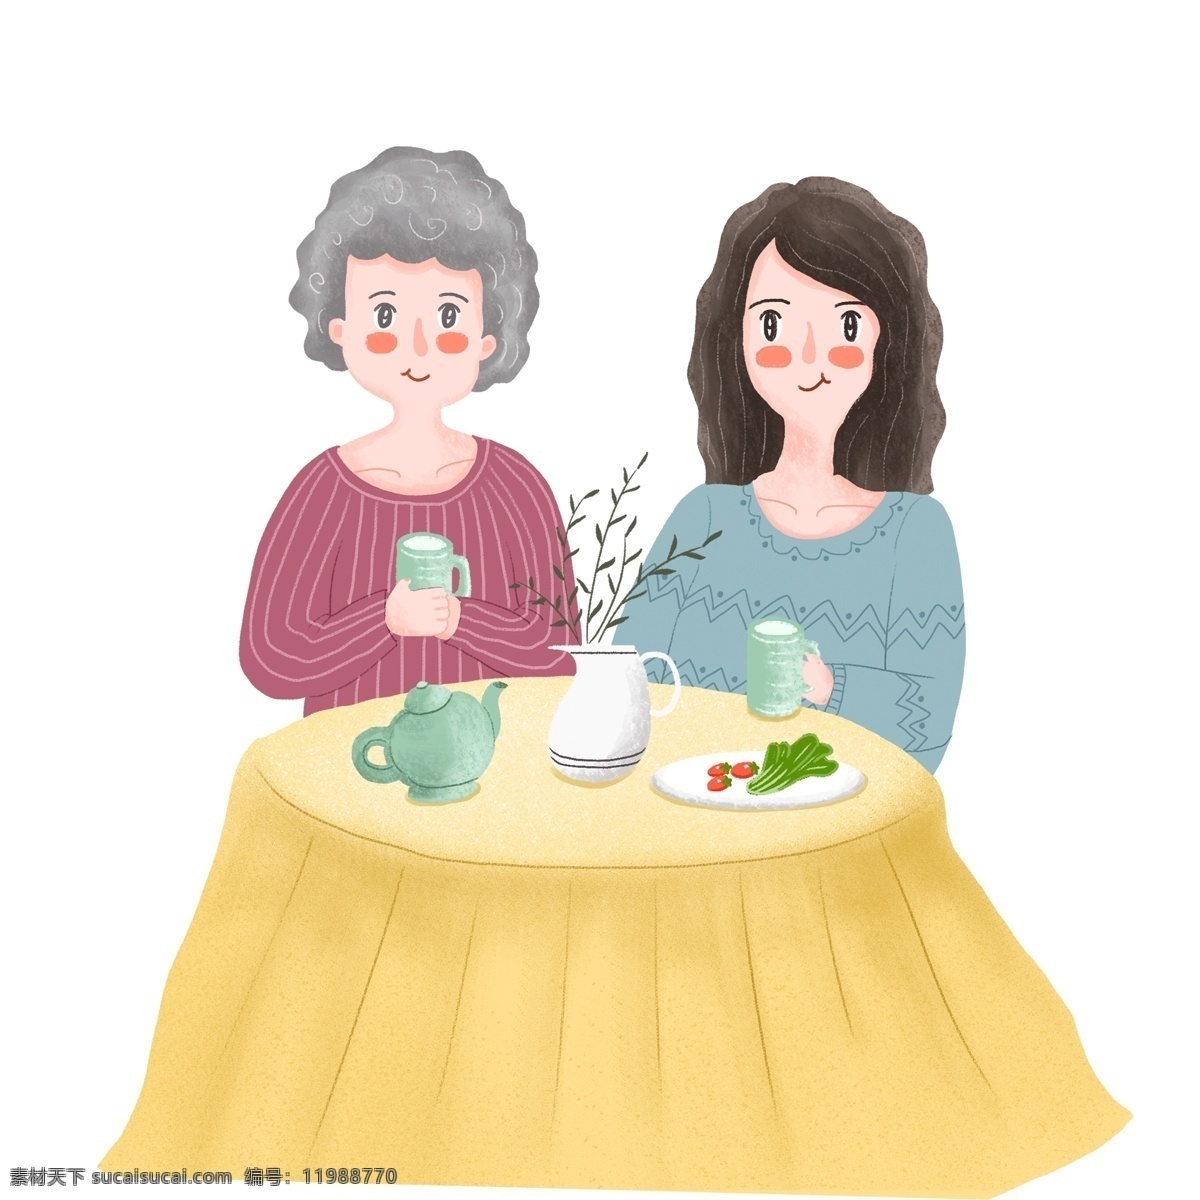 母亲节 一起 吃饭 母女 俩 温馨 场景 手绘 卡通 人物 插画